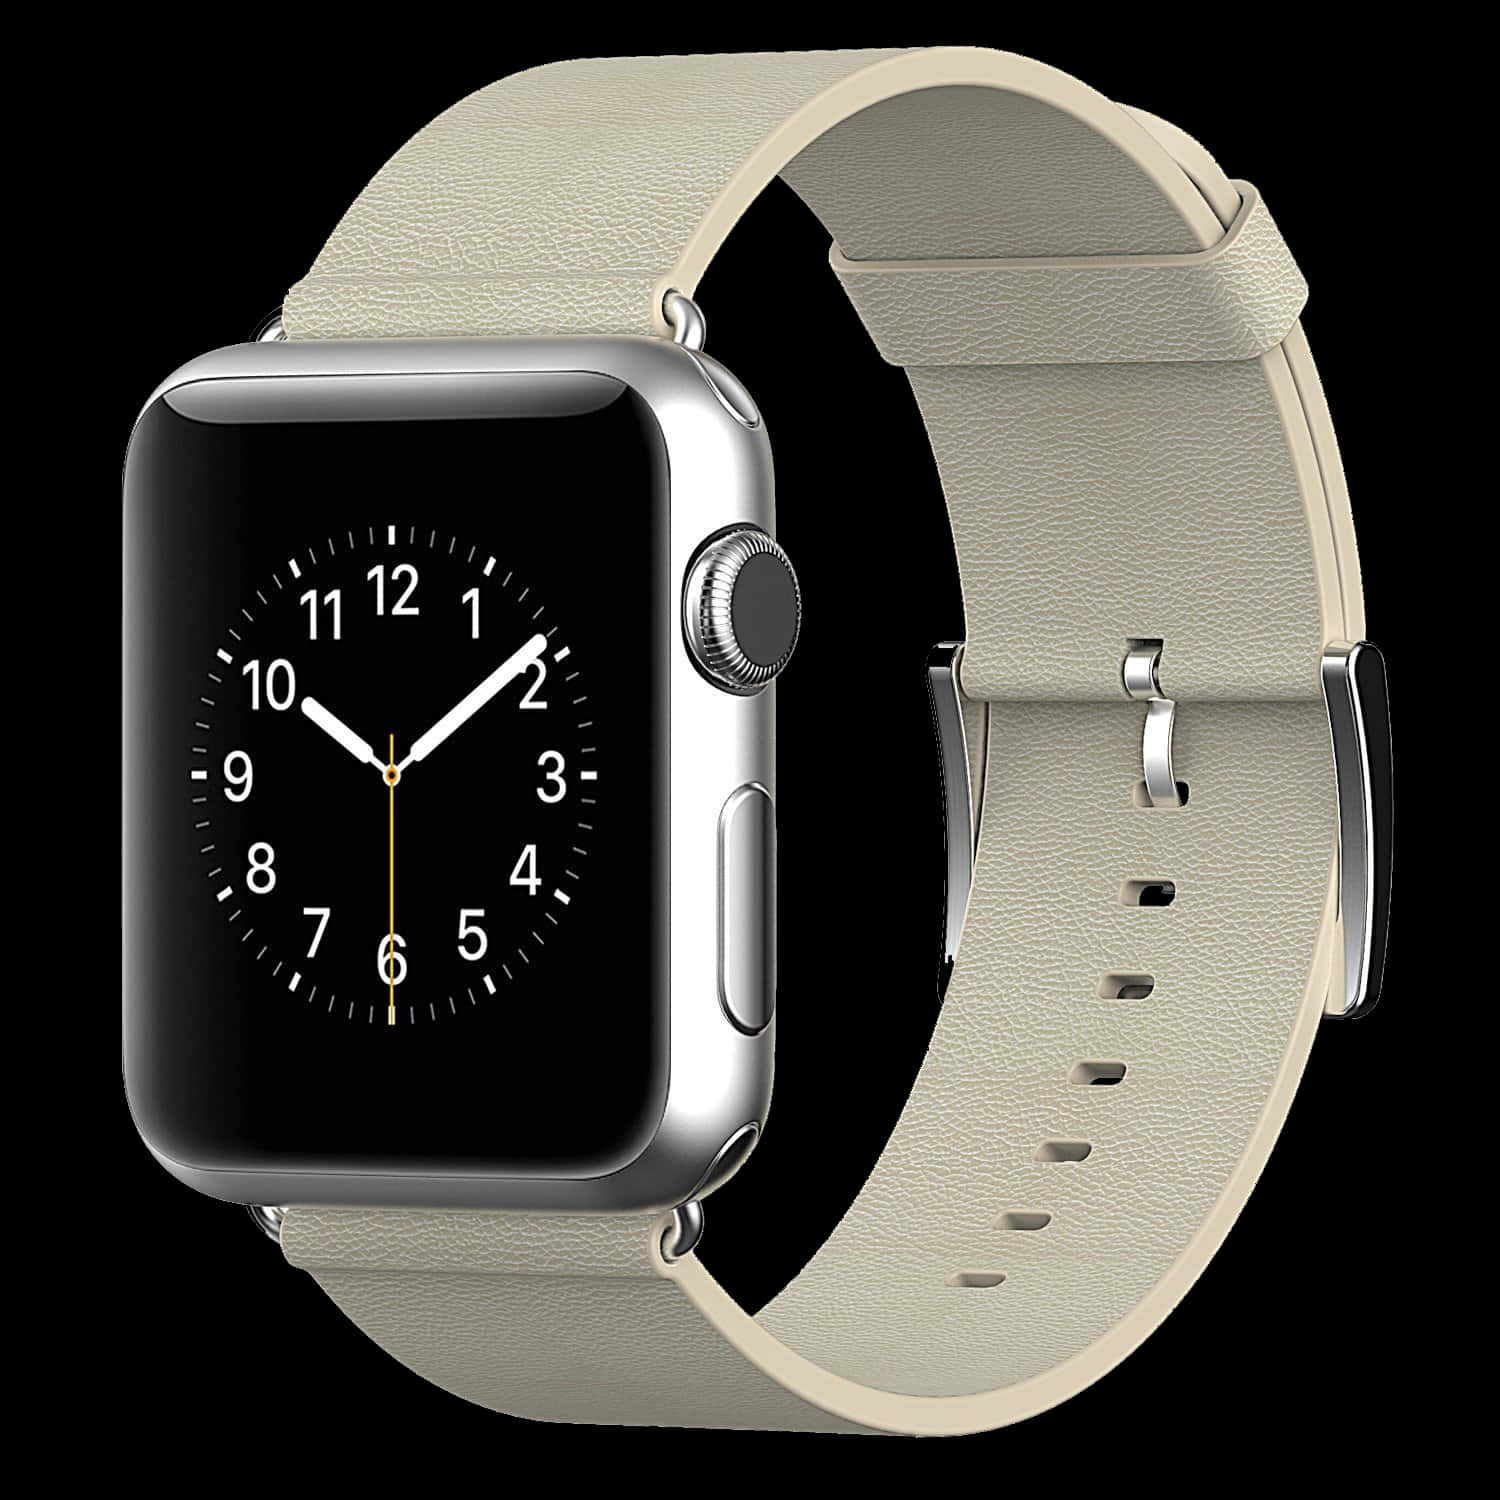 Siiall'avanguardia Con L'apple Watch, Il Dispositivo Indossabile Più Innovativo Al Mondo.